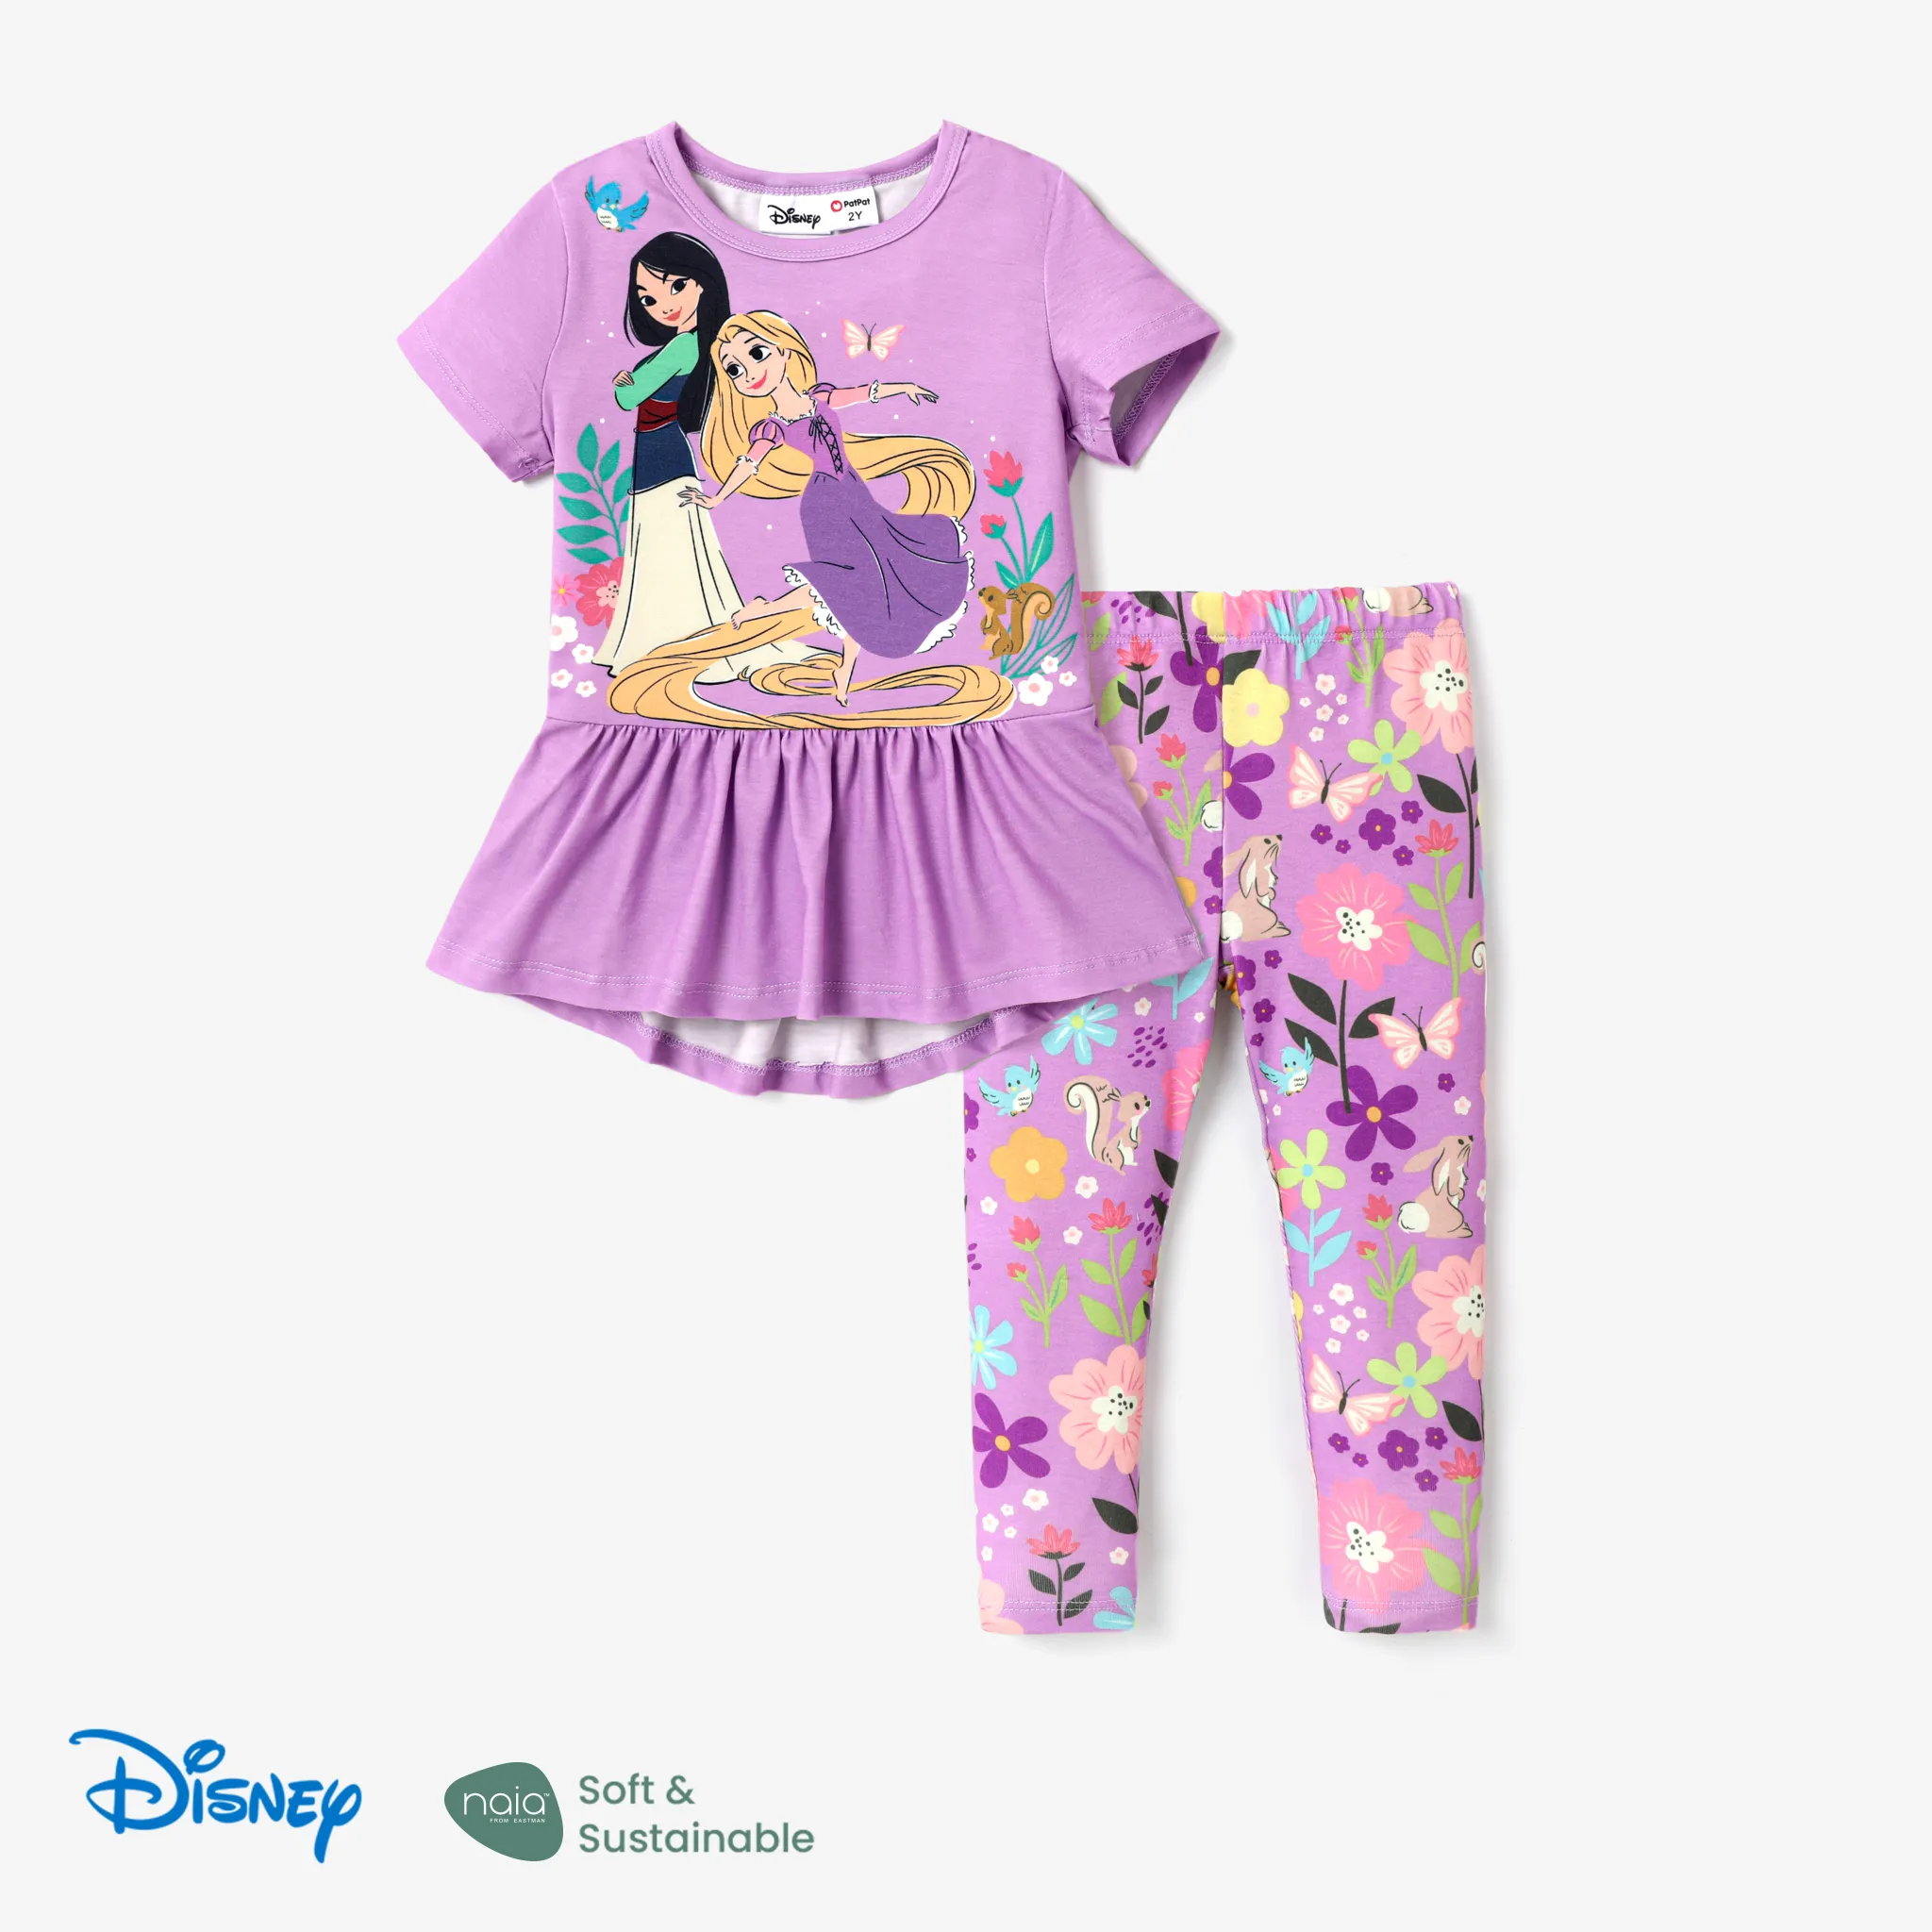 Disney Princess Toddler Girl 2pcs Naiaâ¢ Character Print Peplum Long-sleeve Tee And Floral Pants Set